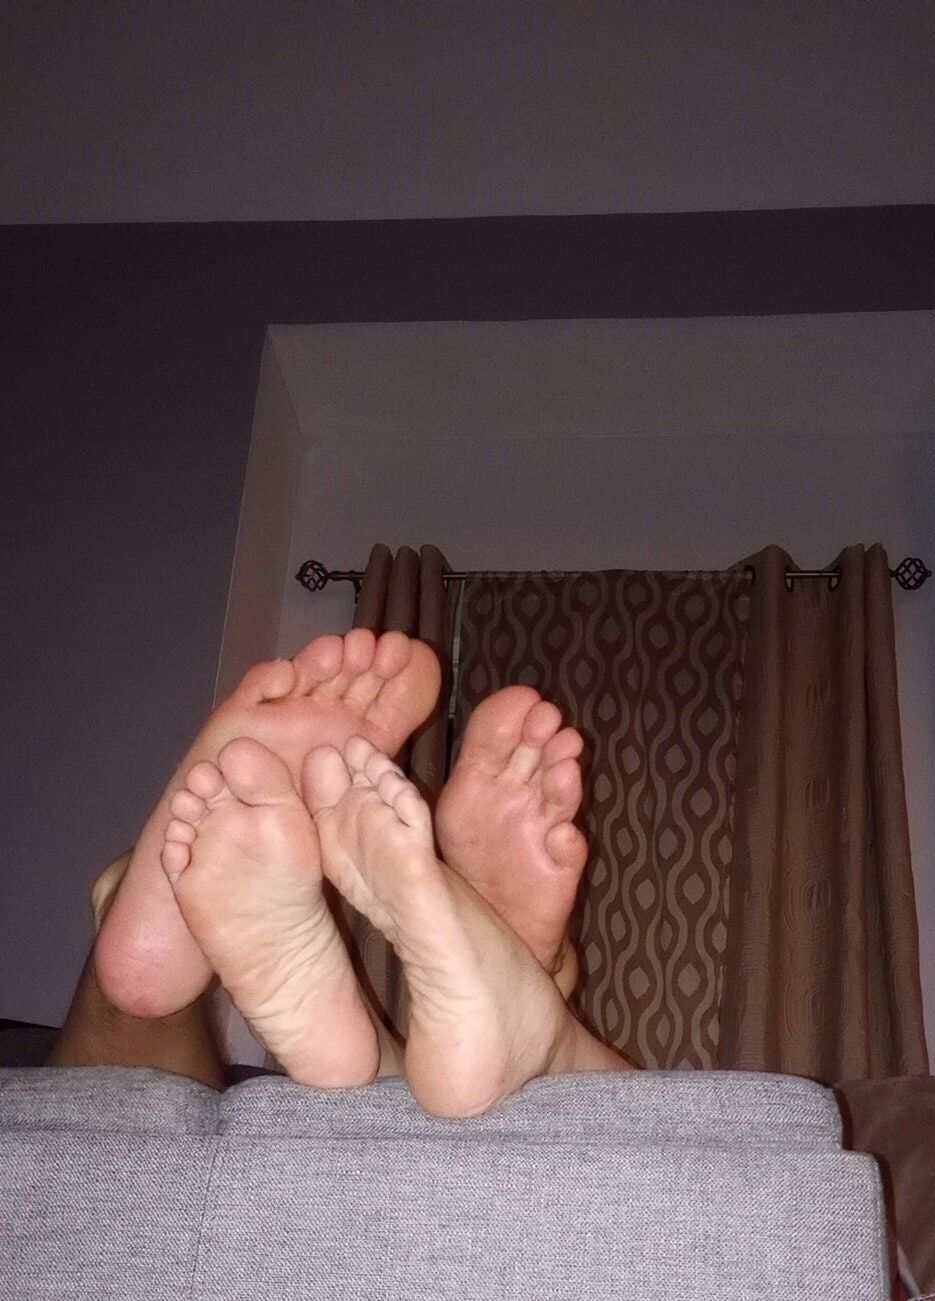 Do you like our feet together #14